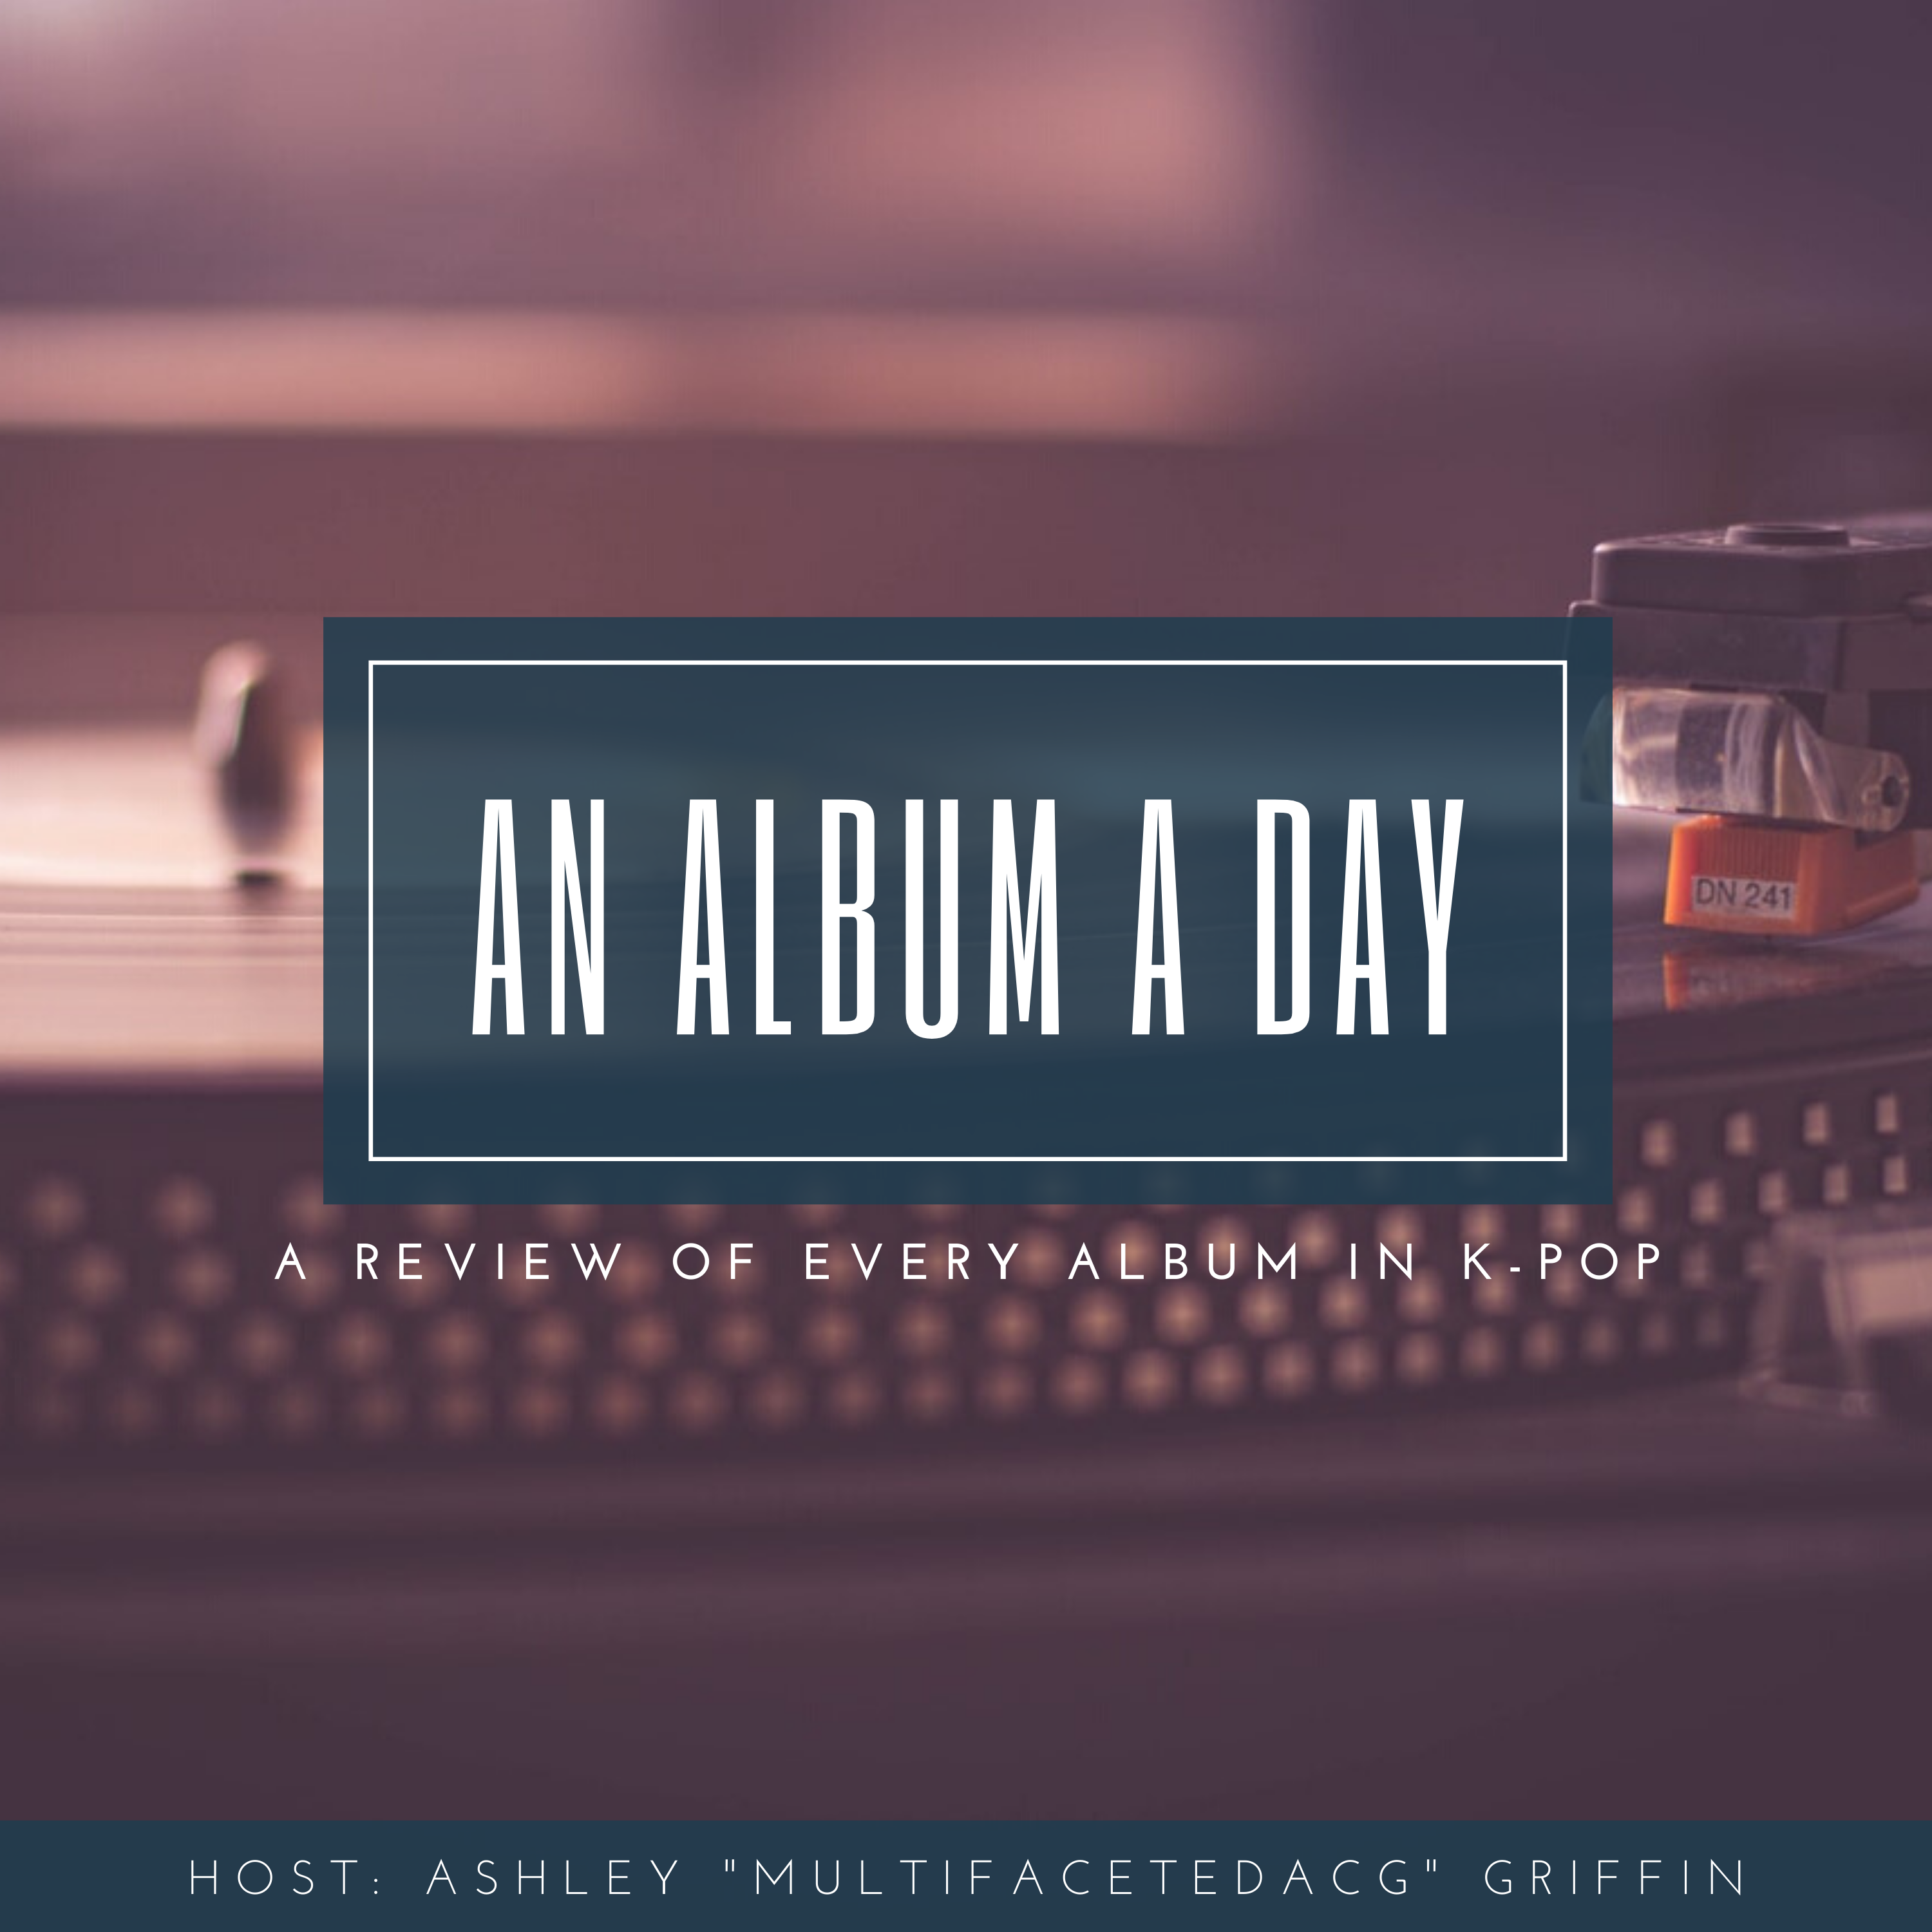 An Album a Day